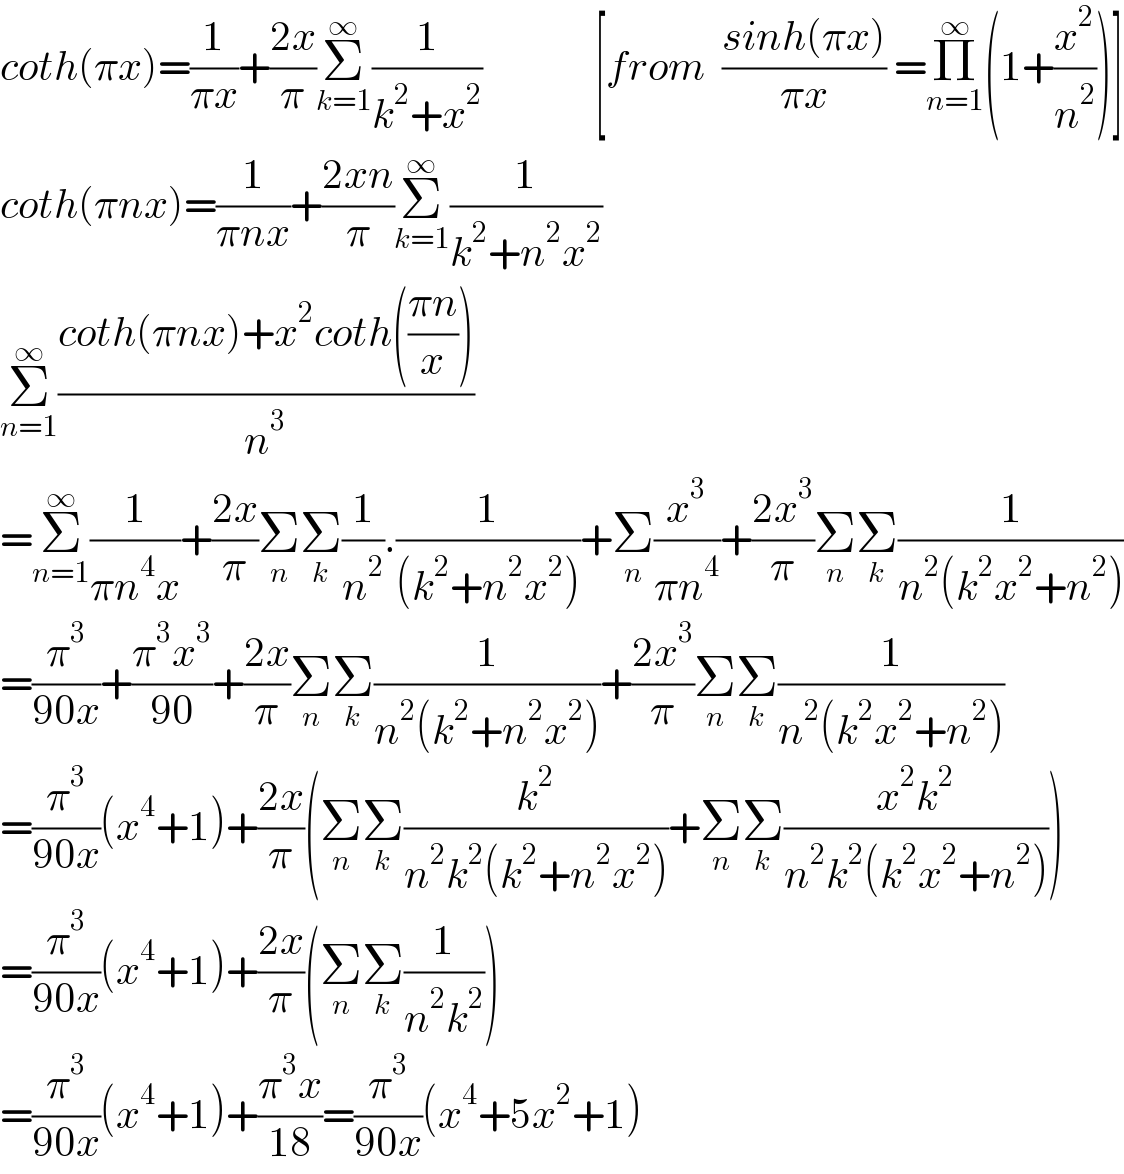 coth(πx)=(1/(πx))+((2x)/π)Σ_(k=1) ^∞ (1/(k^2 +x^2 ))              [from  ((sinh(πx))/(πx)) =Π_(n=1) ^∞ (1+(x^2 /n^2 ))]  coth(πnx)=(1/(πnx))+((2xn)/π)Σ_(k=1) ^∞ (1/(k^2 +n^2 x^2 ))  Σ_(n=1) ^∞ ((coth(πnx)+x^2 coth(((πn)/x)))/n^3 )  =Σ_(n=1) ^∞ (1/(πn^4 x))+((2x)/π)Σ_n Σ_k (1/n^2 ).(1/((k^2 +n^2 x^2 )))+Σ_n (x^3 /(πn^4 ))+((2x^3 )/π)Σ_n Σ_k (1/(n^2 (k^2 x^2 +n^2 )))  =(π^3 /(90x))+((π^3 x^3 )/(90))+((2x)/π)Σ_n Σ_k (1/(n^2 (k^2 +n^2 x^2 )))+((2x^3 )/π)Σ_n Σ_k (1/(n^2 (k^2 x^2 +n^2 )))  =(π^3 /(90x))(x^4 +1)+((2x)/π)(Σ_n Σ_k (k^2 /(n^2 k^2 (k^2 +n^2 x^2 )))+Σ_n Σ_k ((x^2 k^2 )/(n^2 k^2 (k^2 x^2 +n^2 ))))  =(π^3 /(90x))(x^4 +1)+((2x)/π)(Σ_n Σ_k (1/(n^2 k^2 )))  =(π^3 /(90x))(x^4 +1)+((π^3 x)/(18))=(π^3 /(90x))(x^4 +5x^2 +1)   